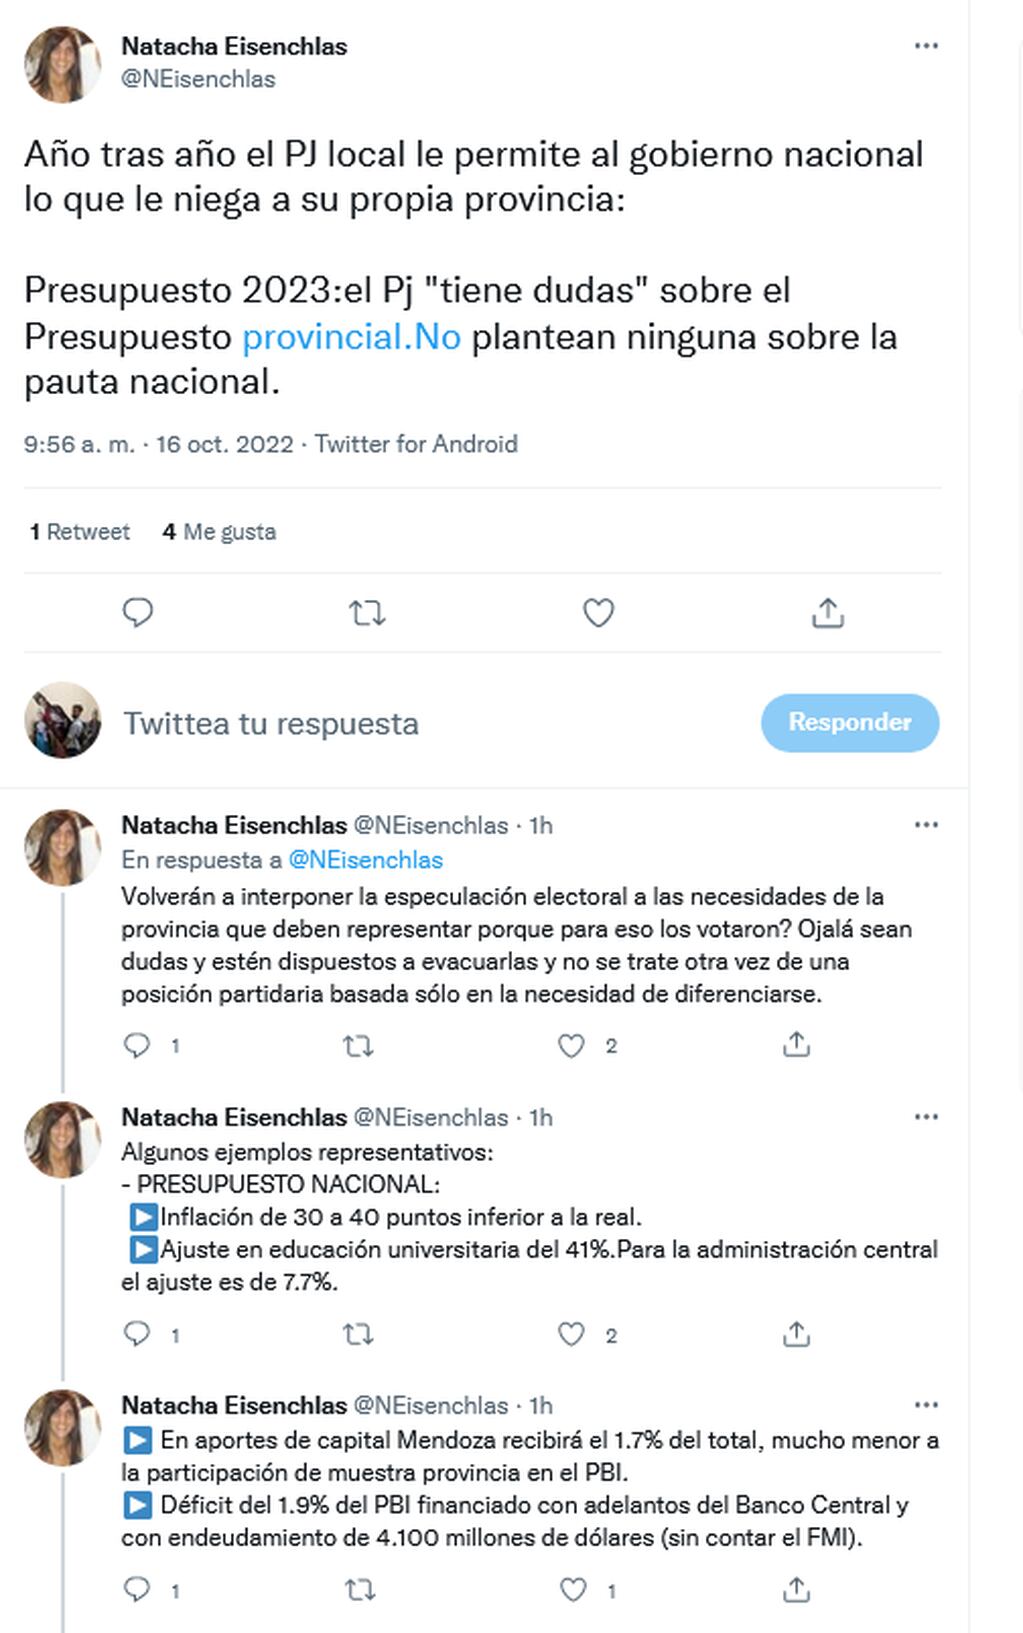 La senadora Natacha Eisenchlas criticó al peronismo por los cuestionamientos sobre el Presupuesto 2023. Twitter.